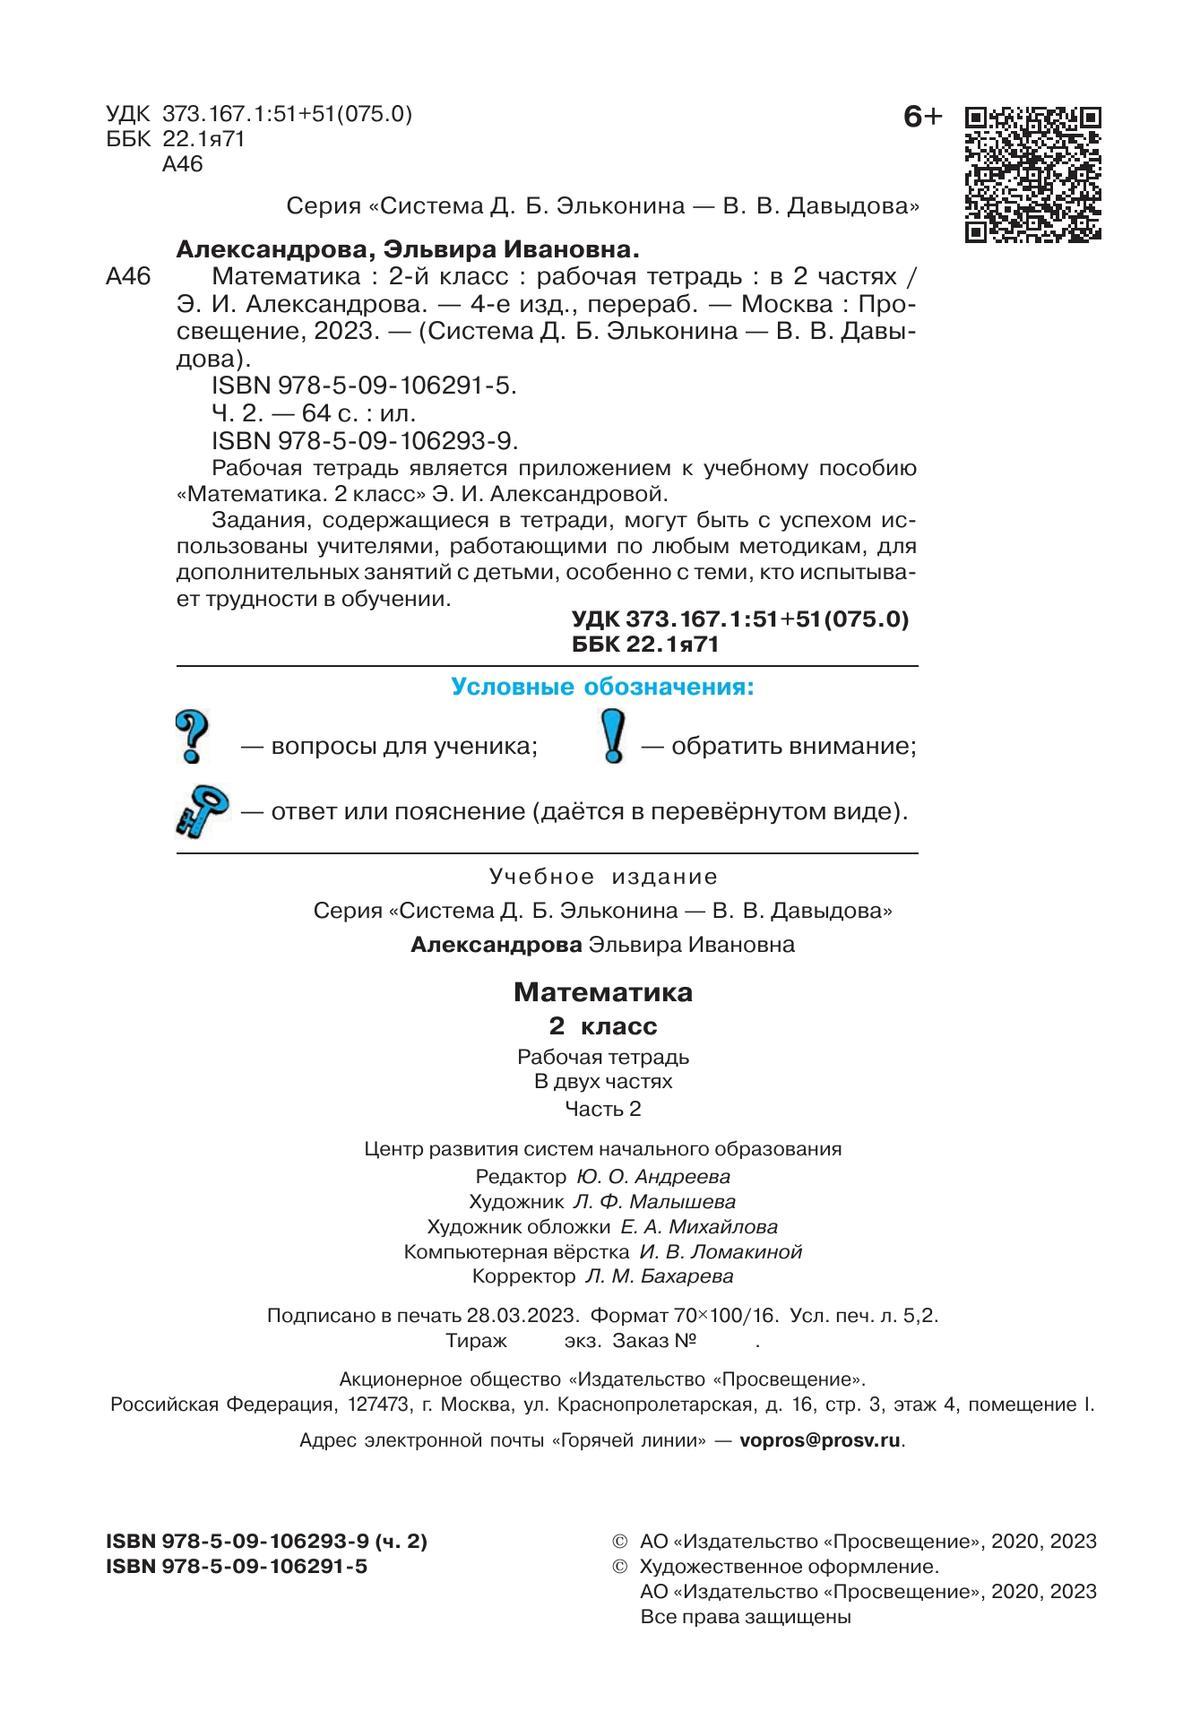 Рабочая тетрадь по математике №2. 2 класс Александрова Э.И. 7